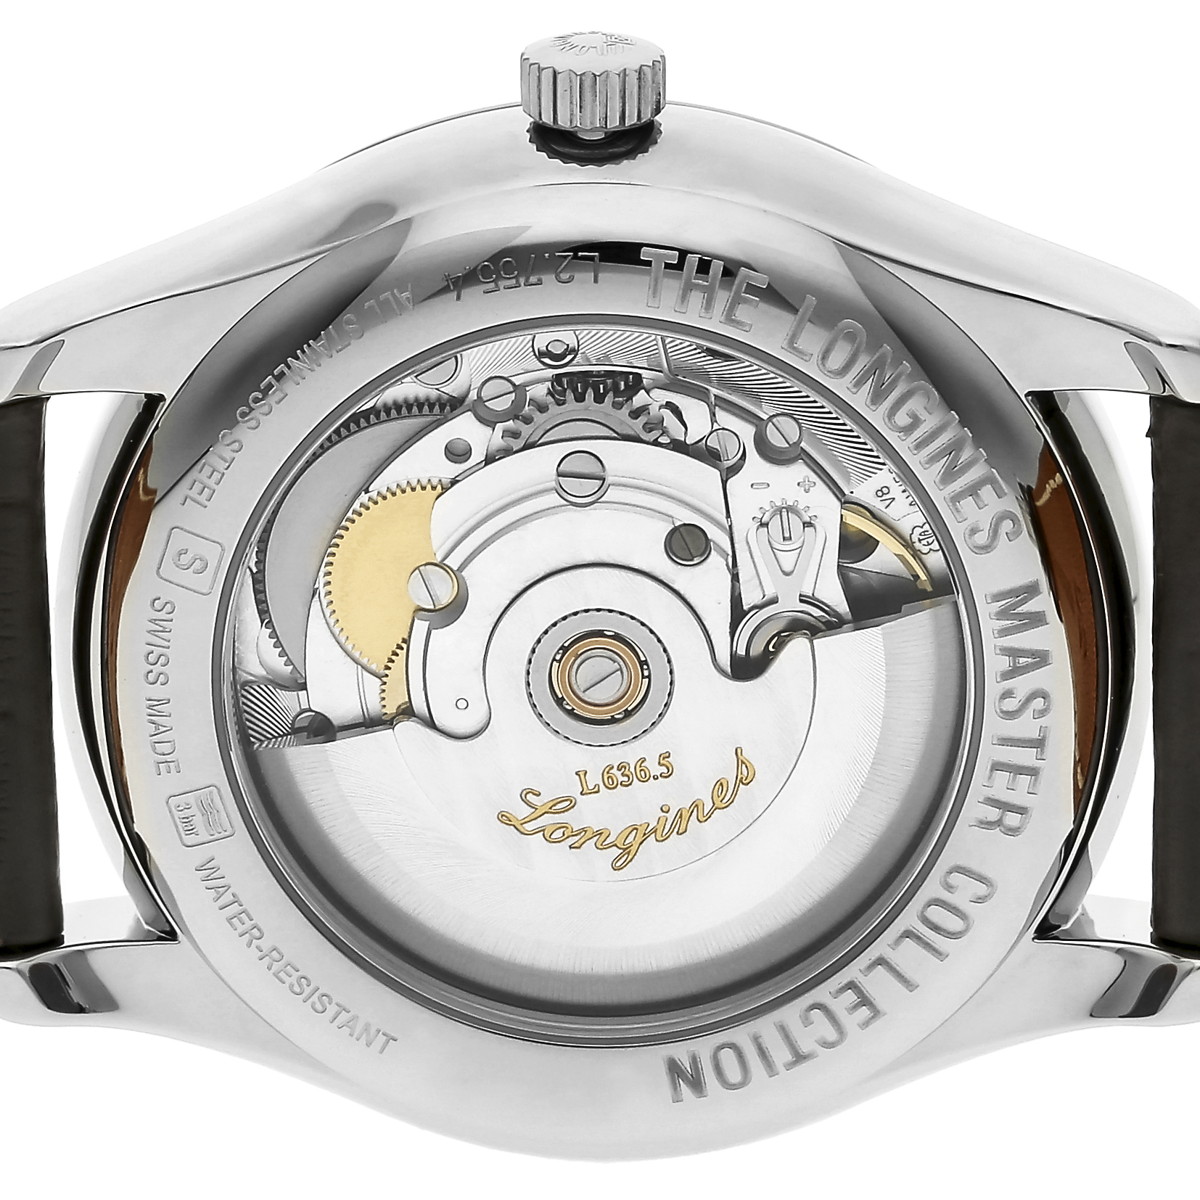 ■腕時計 メンズ マスターコレクション シルバ- SS アリゲーター革